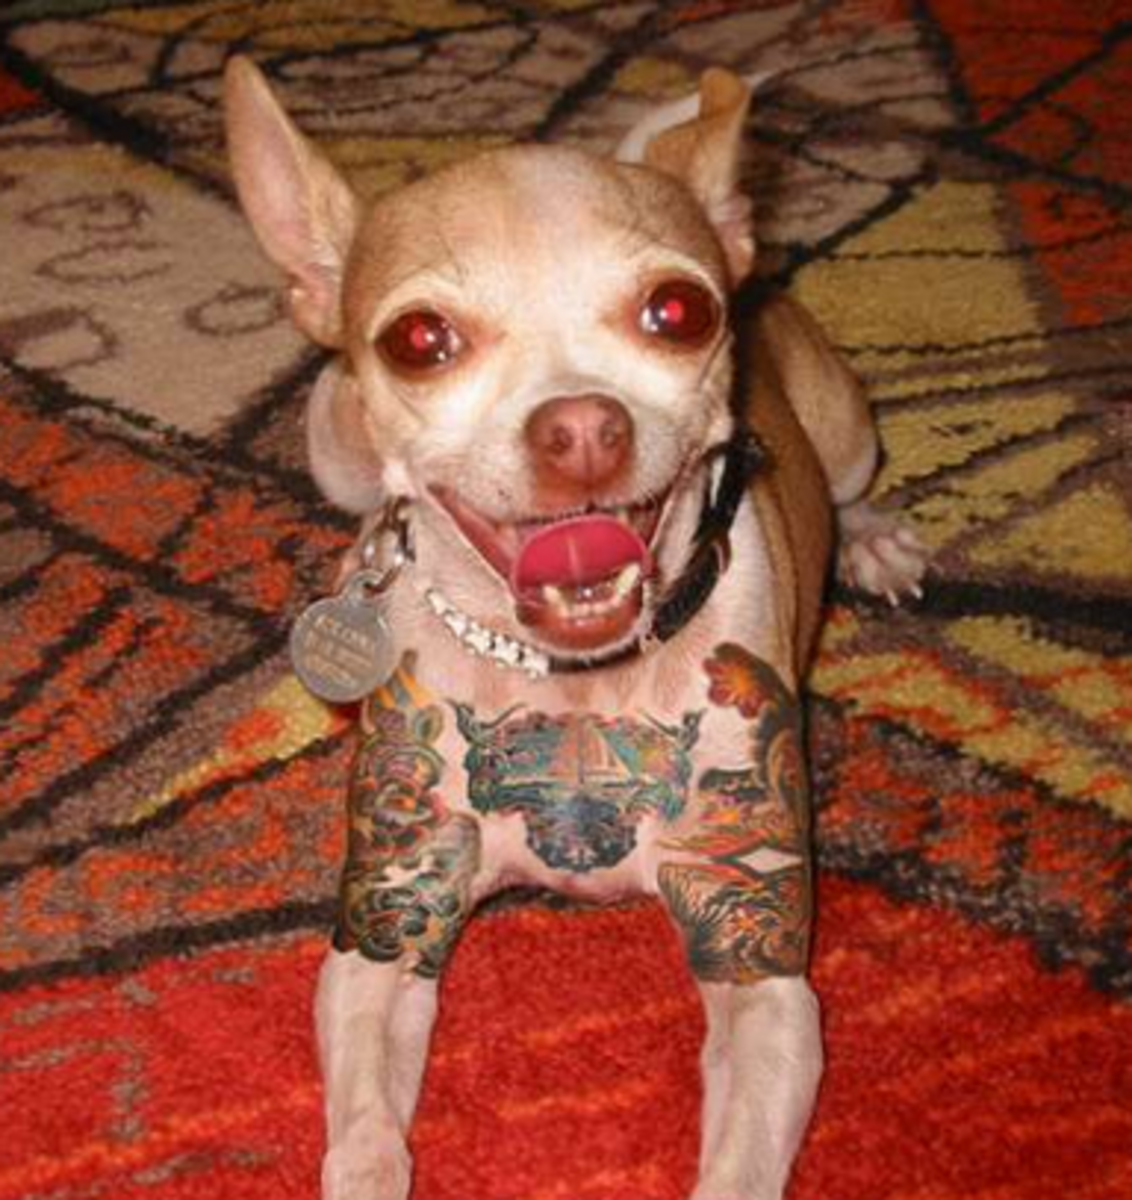 Kisállat tetoválás, kisállat tetoválás ötletek, kutya tetoválás, macska tetoválás, kisállat piercing, háziállat tetoválás, állatjogi törvények, tetoválás törvények, new york tetoválás törvények, new york tilalmak kisállat tetoválás, PETA, Ernesto Rodriguez, The National Dog Registry, menhely tetoválás, állatorvosi tetoválások háziállatok, menhelyi tetoválások háziállatok, Mistah Metro, Linda Rosenthal, Andrew Cuomo, tintával